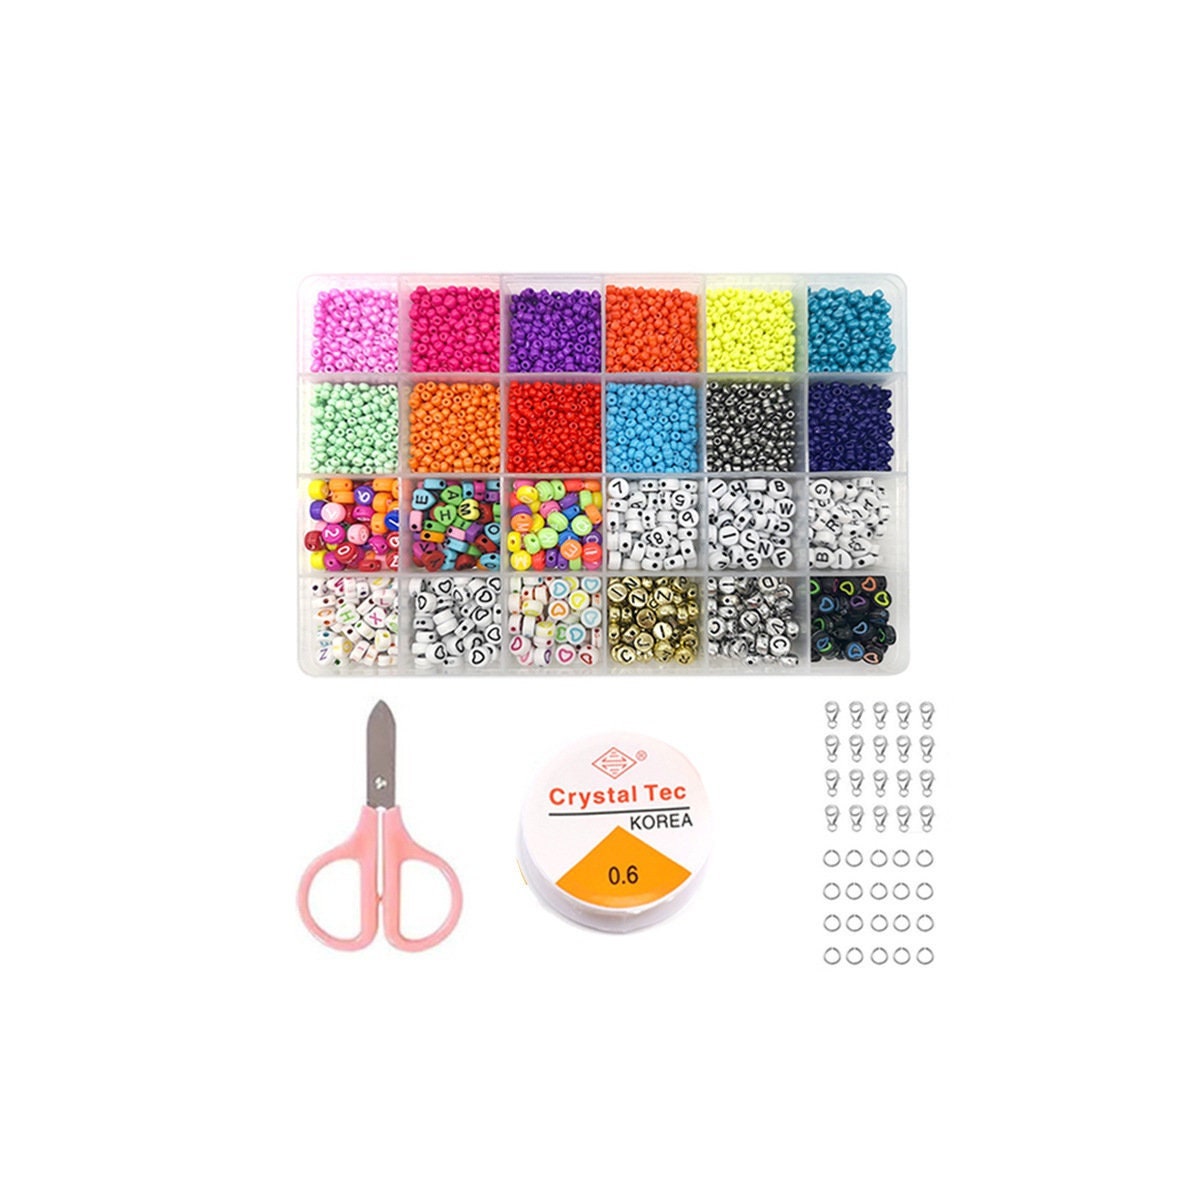 Generic 4mm Beads For Bracelets Making Kit, Alphabet Kit For